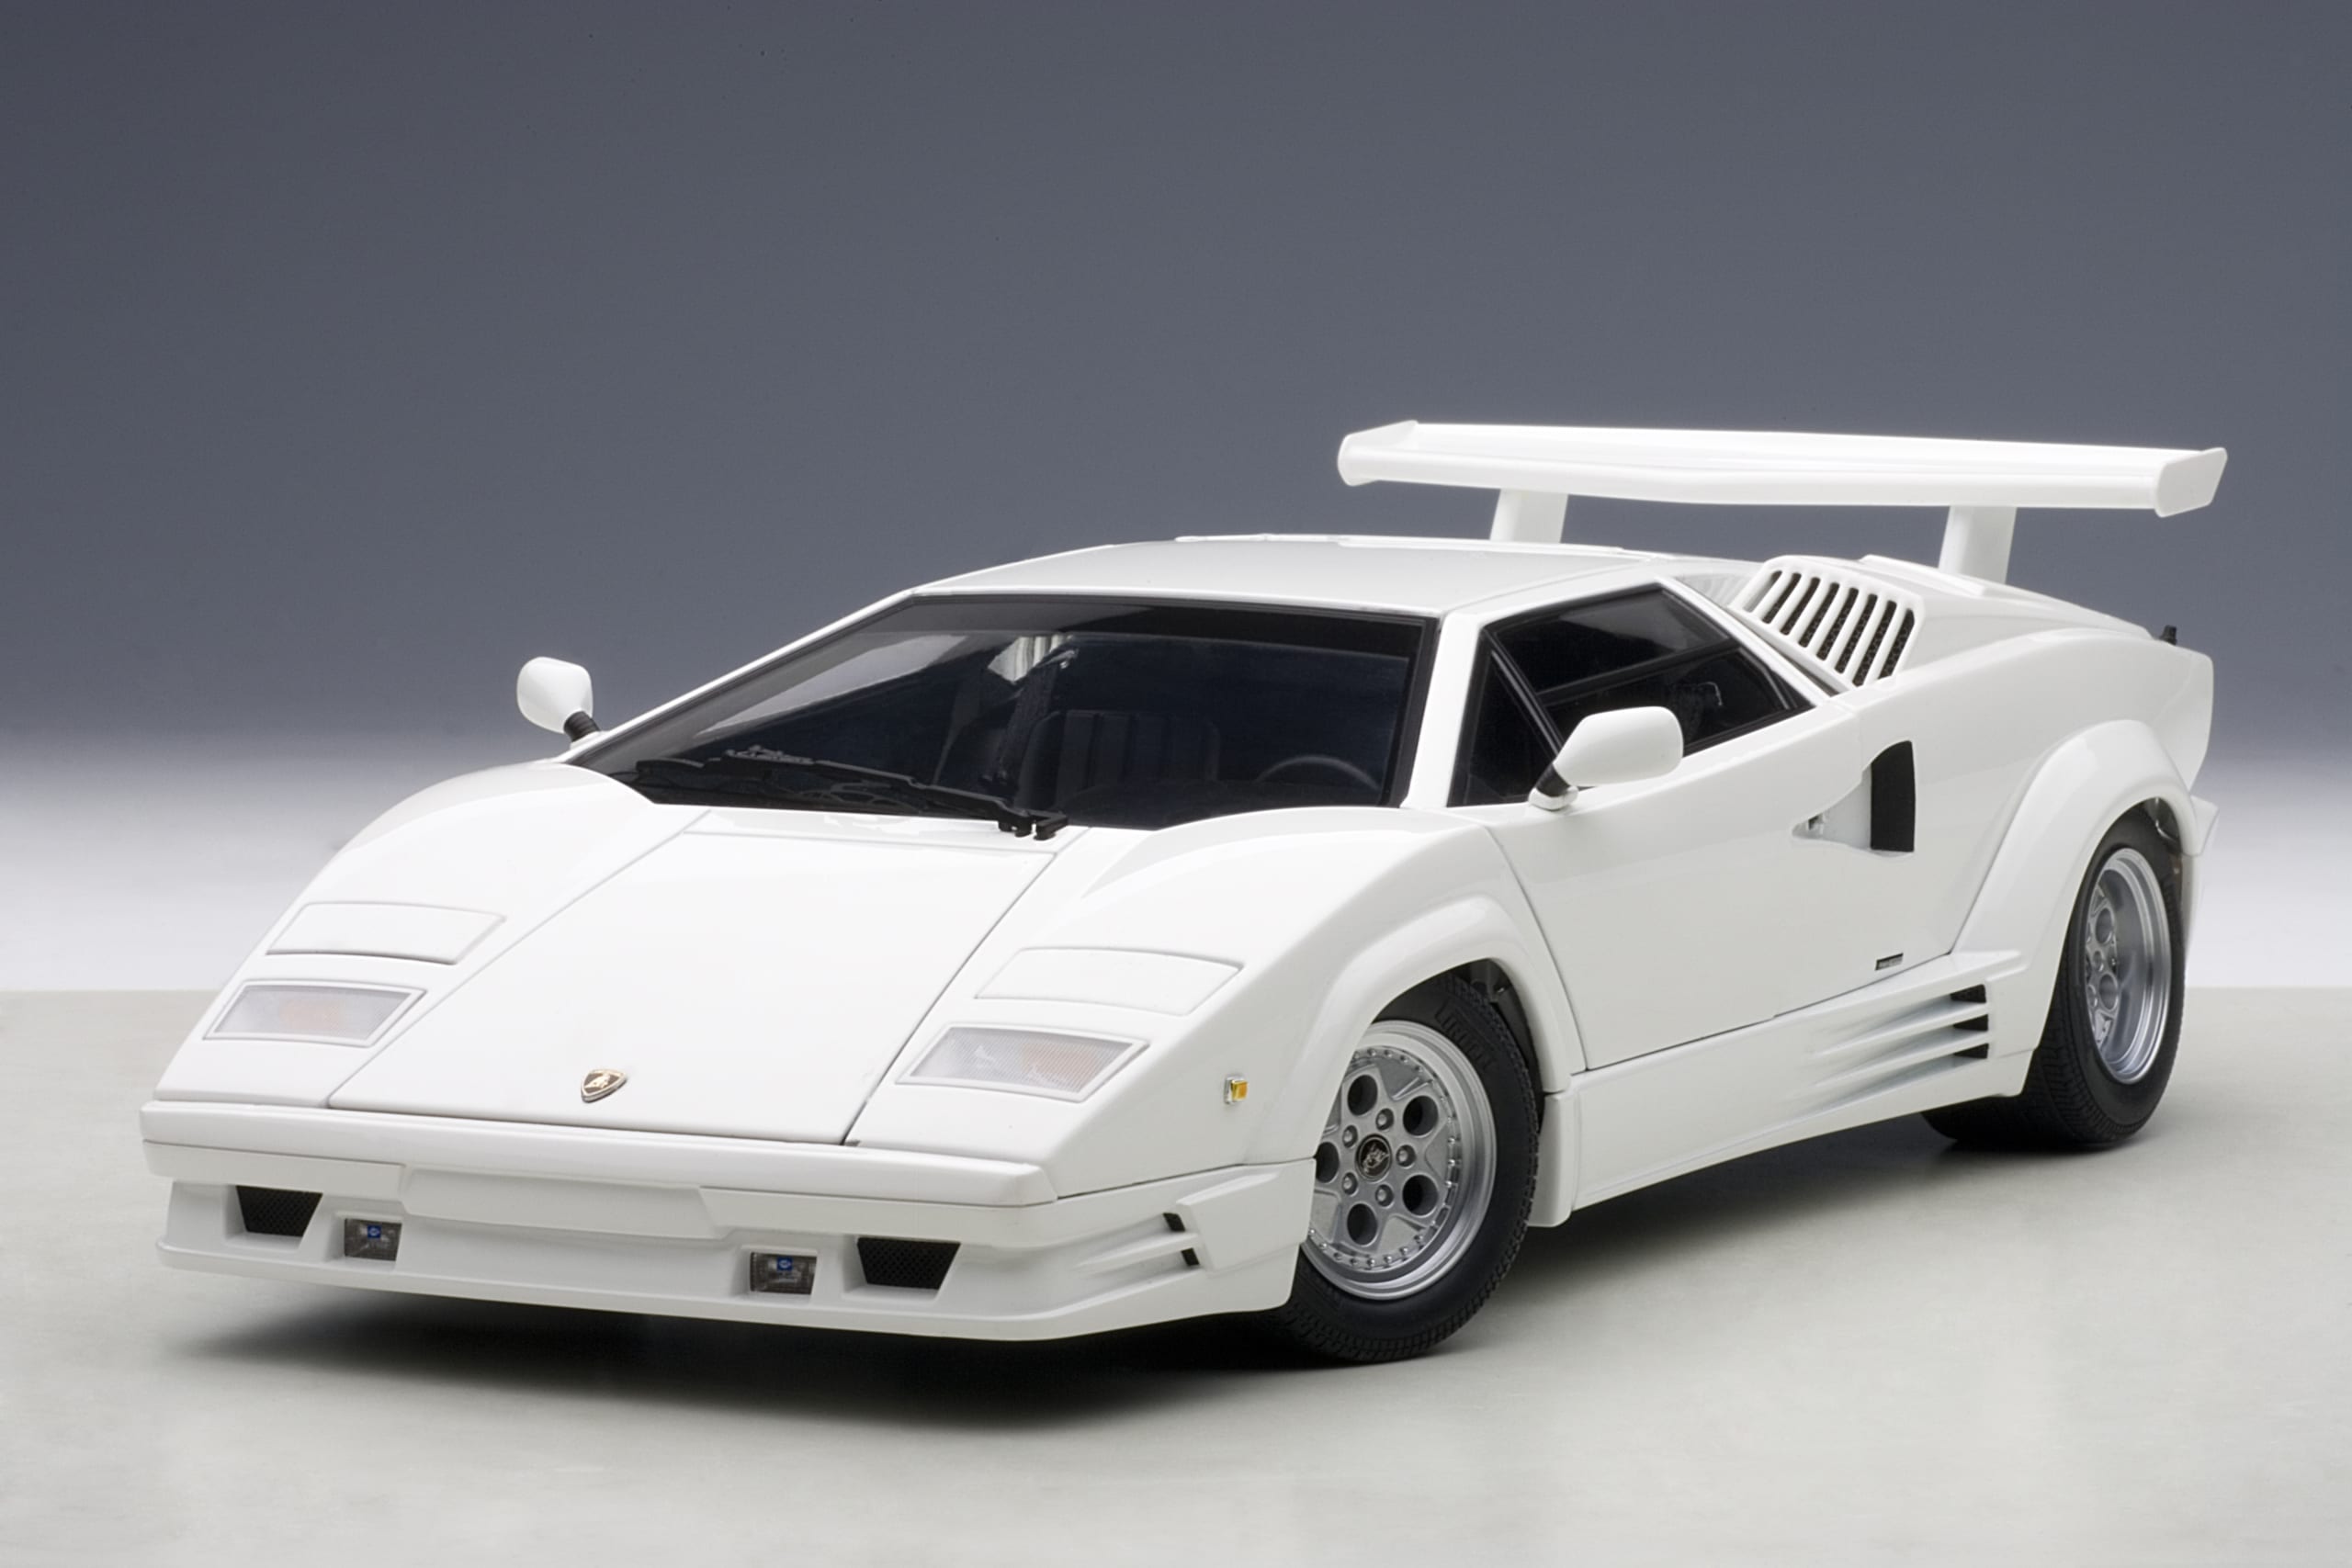 Lamborghini Countach 25th Anniversary Edition (White) | AUTOart